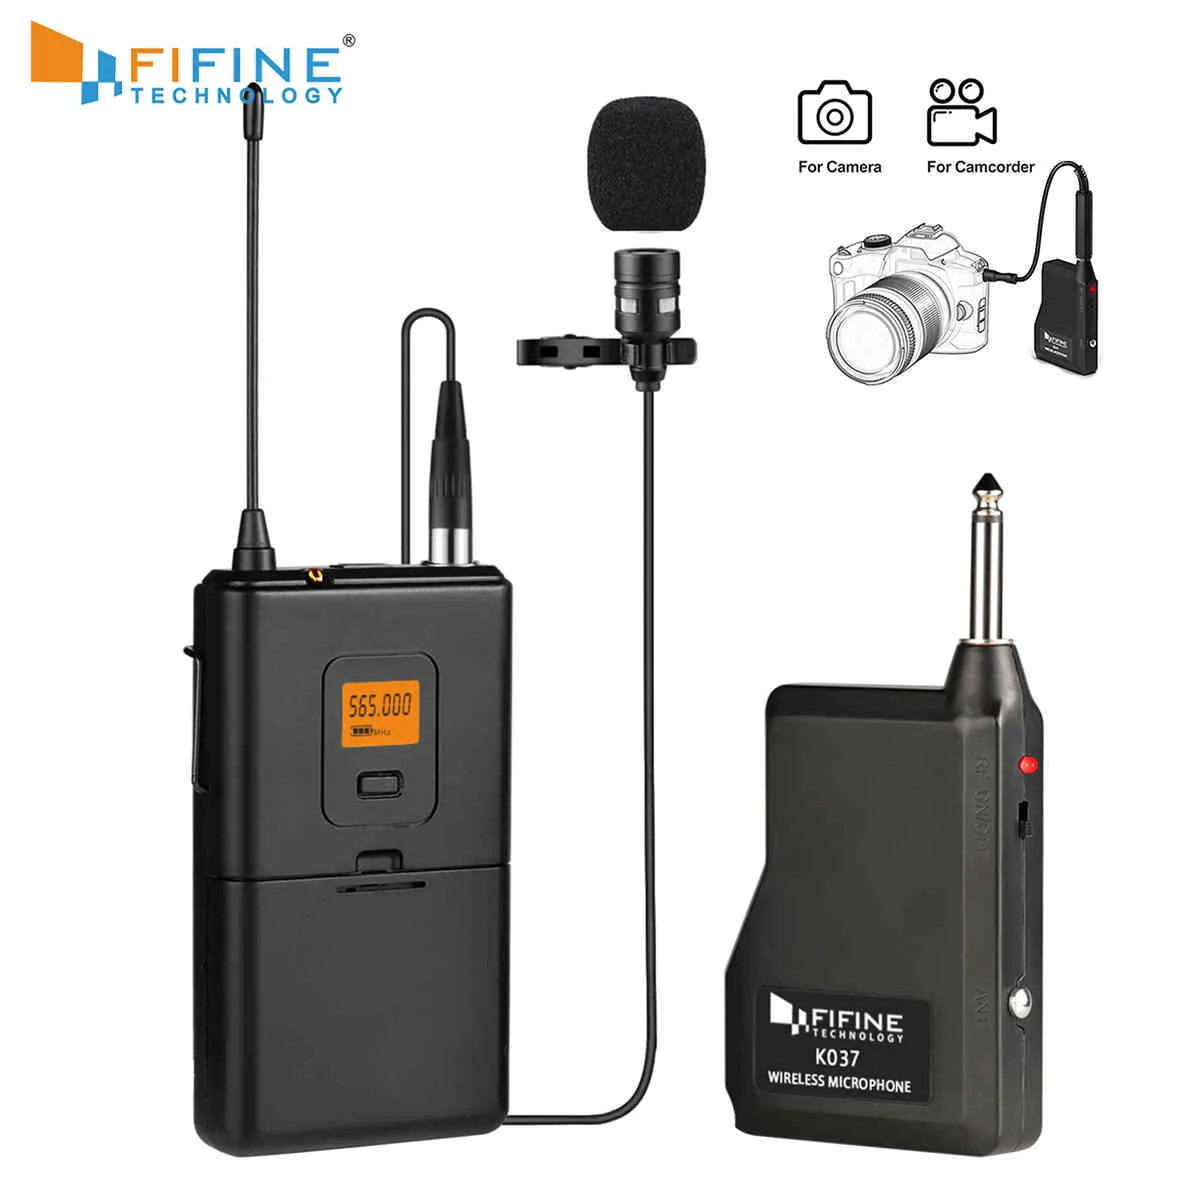 Fifine 20-kanals UHF Wireless Lavalier Mikrofonsystem med BodyPack-sändare Lapel Mic Receiver Camera / Telefoner